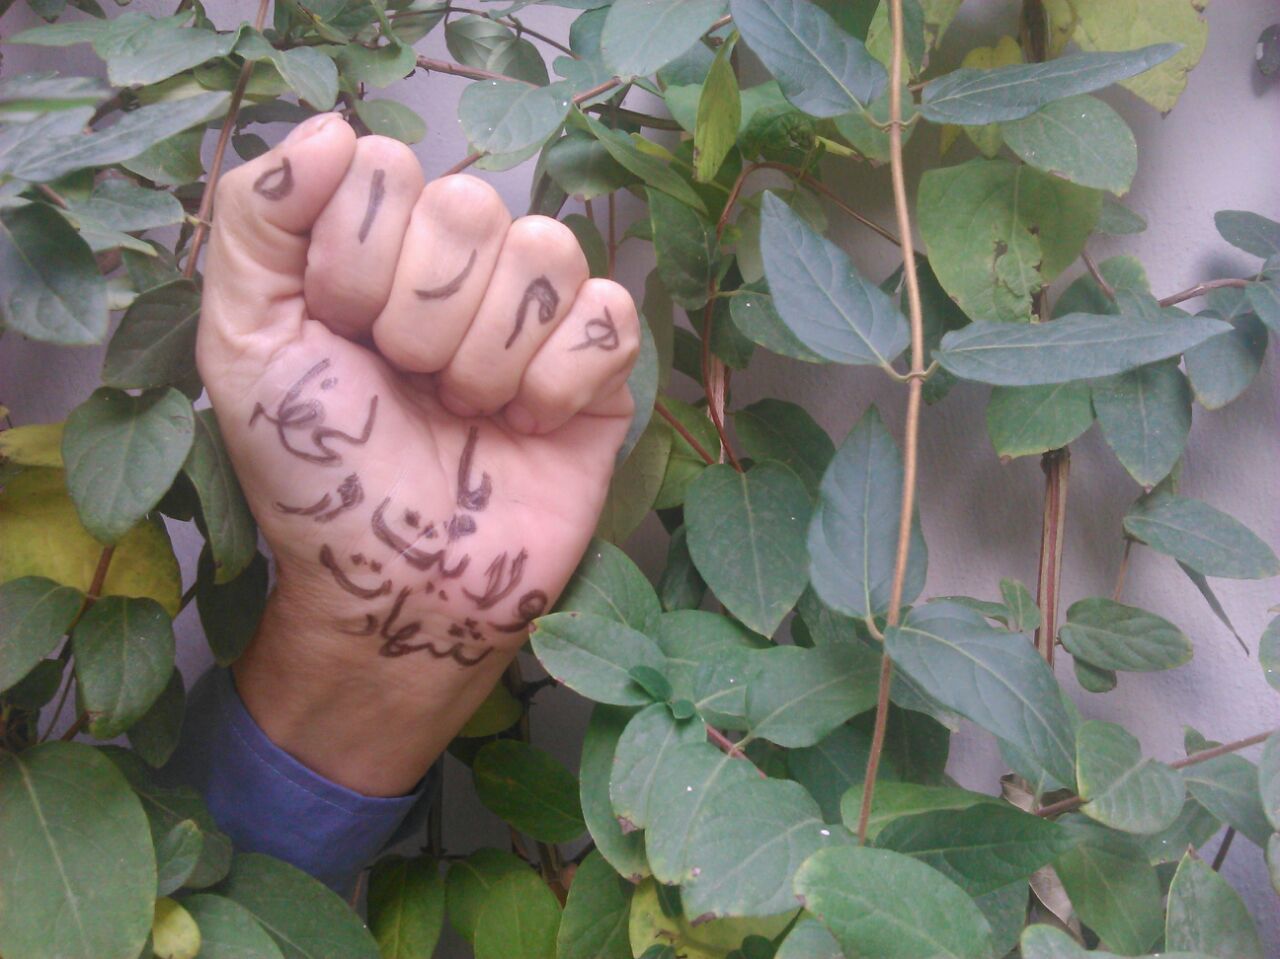 وبلاگ نویسان استان کرمانشاه به کمپین "#بسیجی_یعنی_" پیوستند